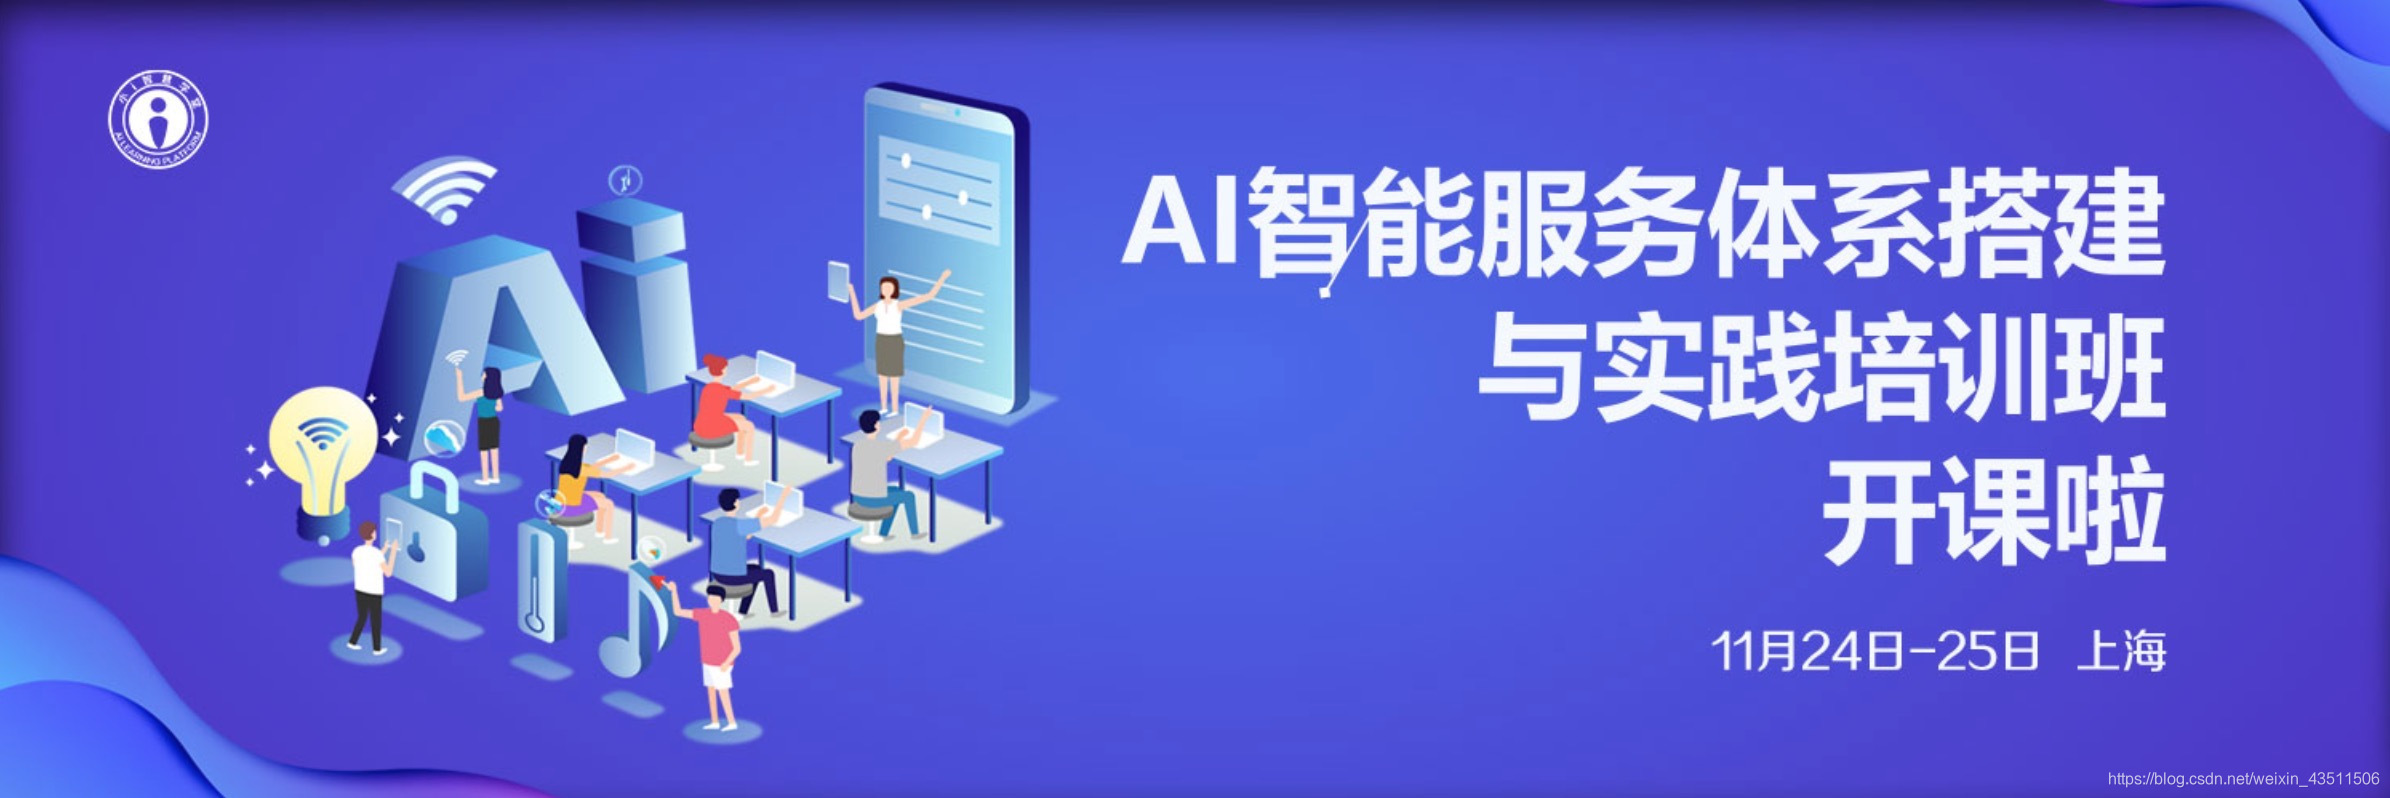 AI智慧服務體系搭建與實踐培訓班11月24-25日上海開課